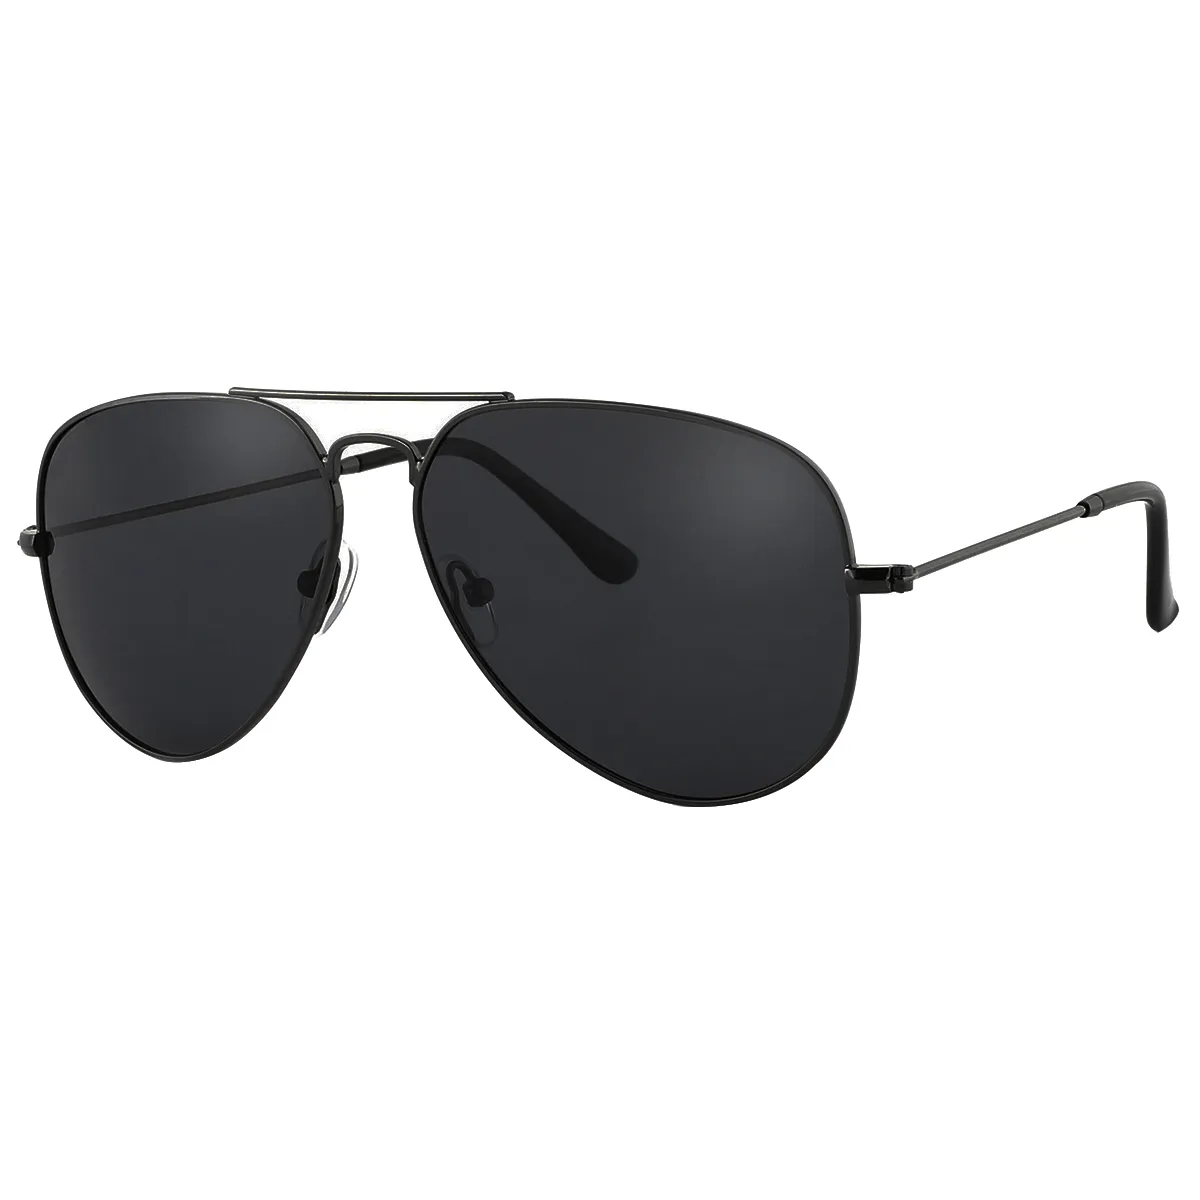 Balboa - Aviator Black Sunglasses for Men & Women